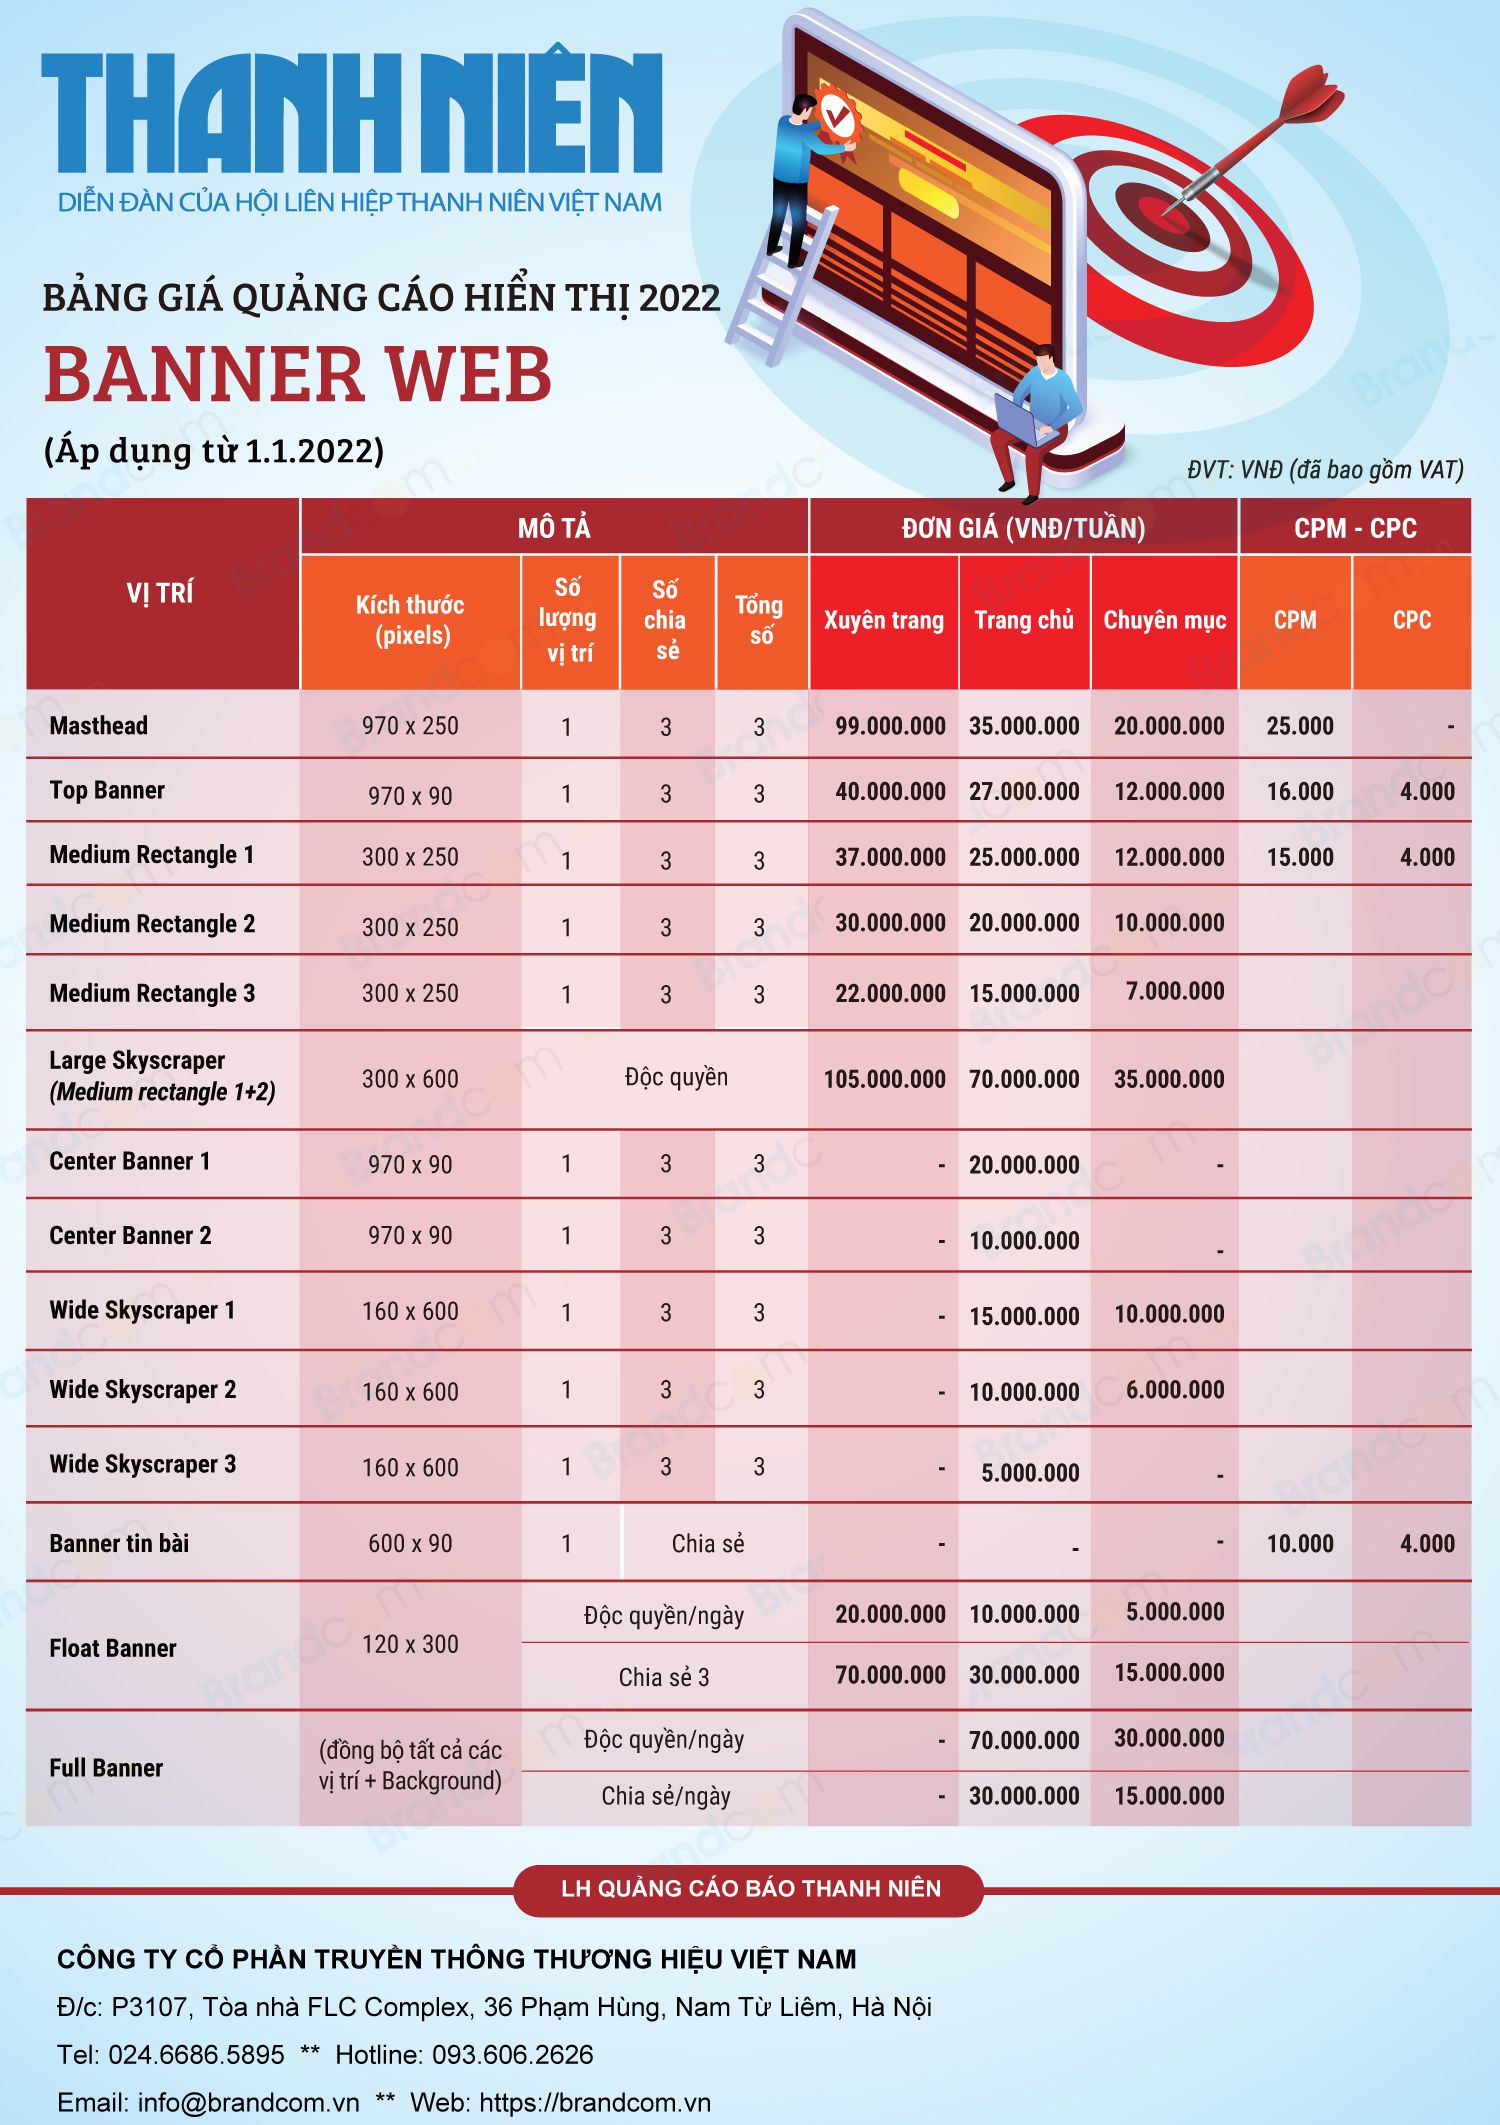 Bảng giá quảng cáo báo Thanh Niên online 2022